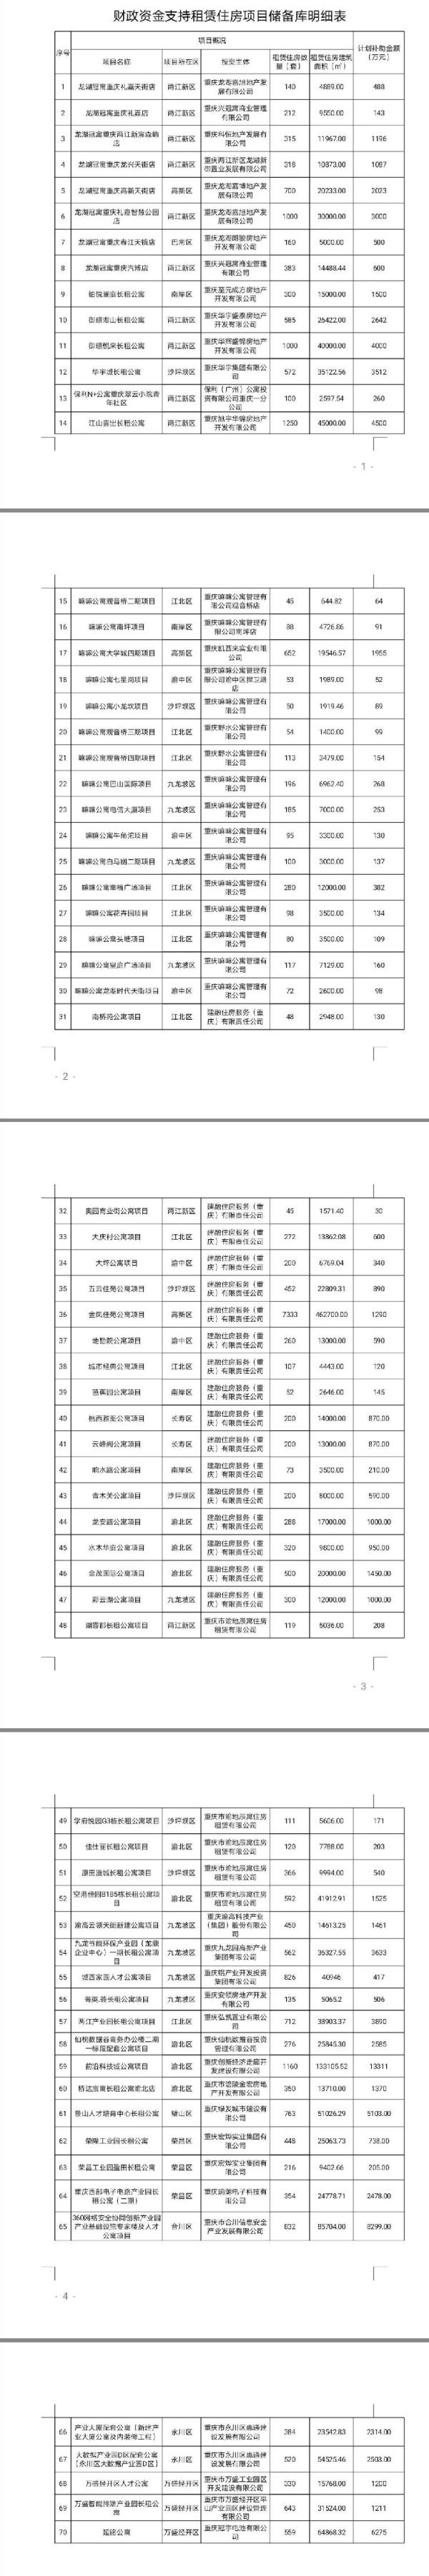 重庆70个租赁住房项目纳入储备库 补助资金逾10亿元